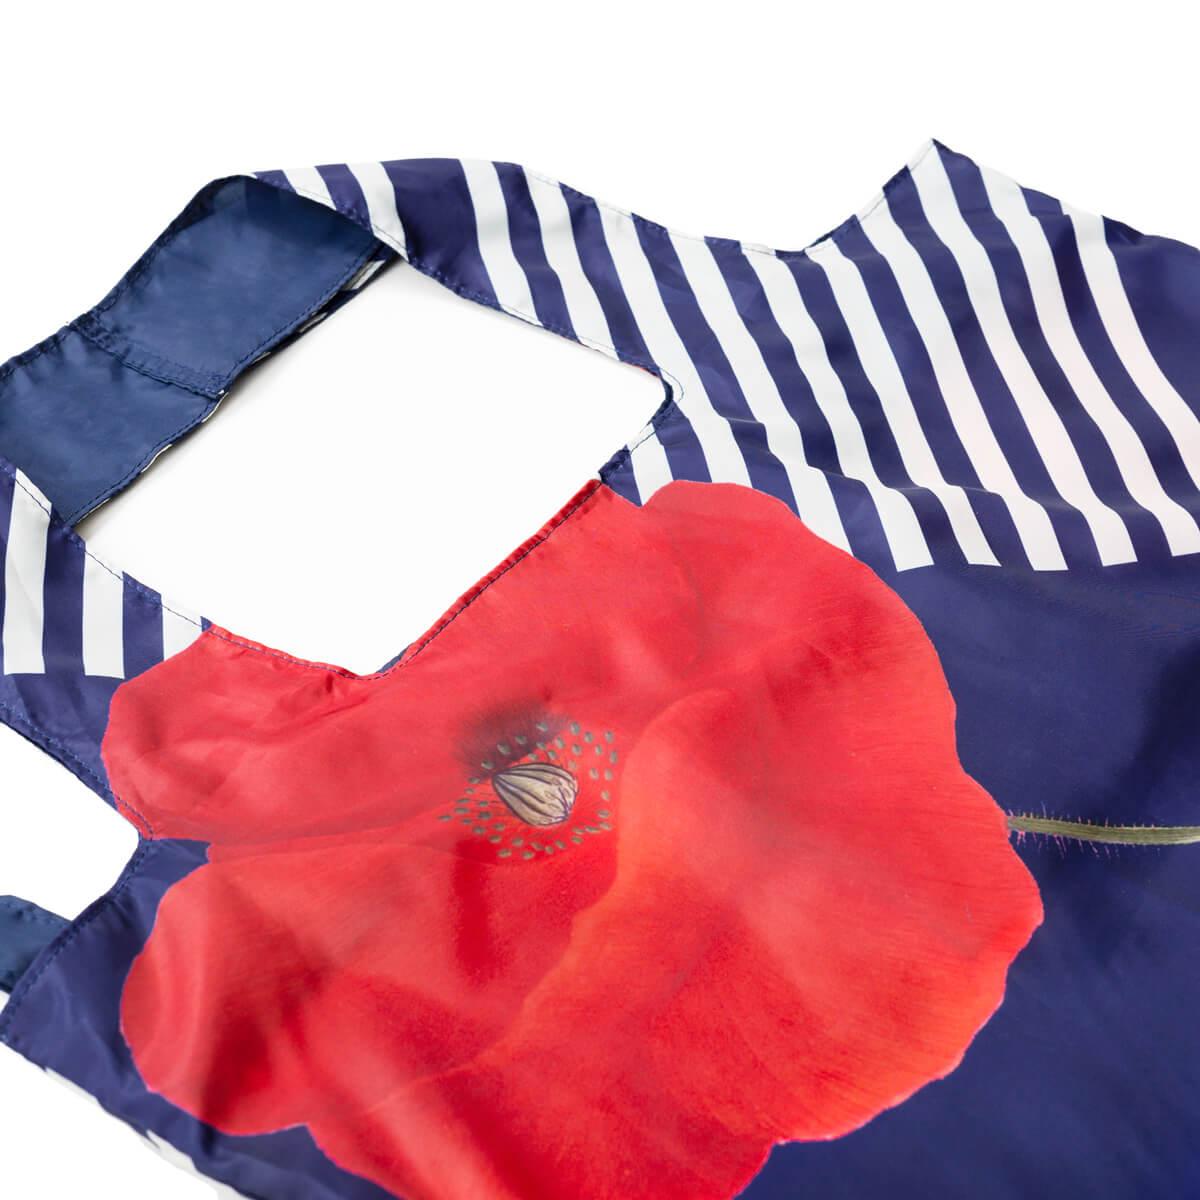 Poppy Tote bag - FLORA DANICA DENMARK